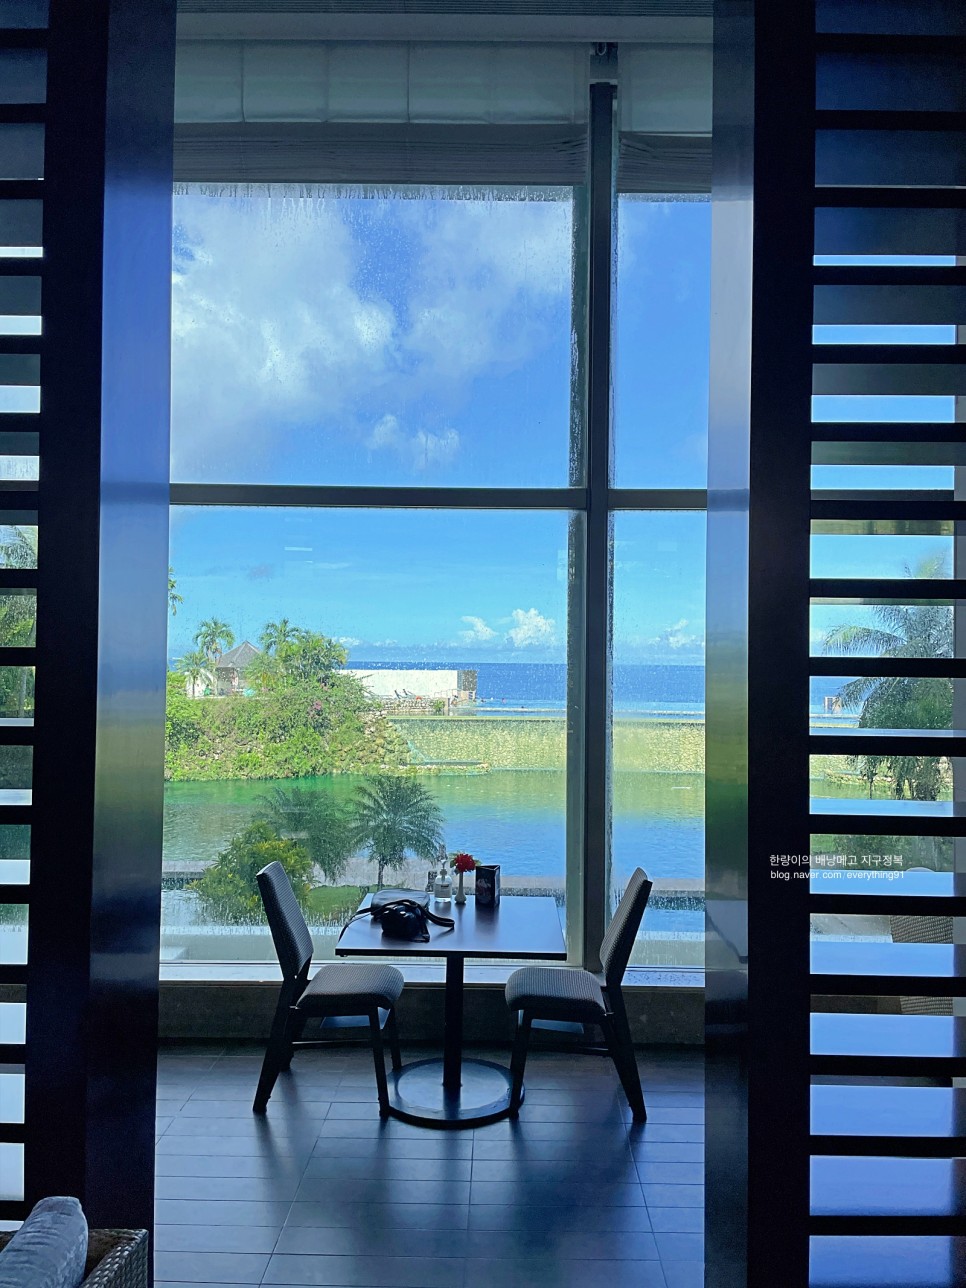 괌 신혼여행 숙소 괌 리가로얄호텔 오션뷰 객실이 멋져요!